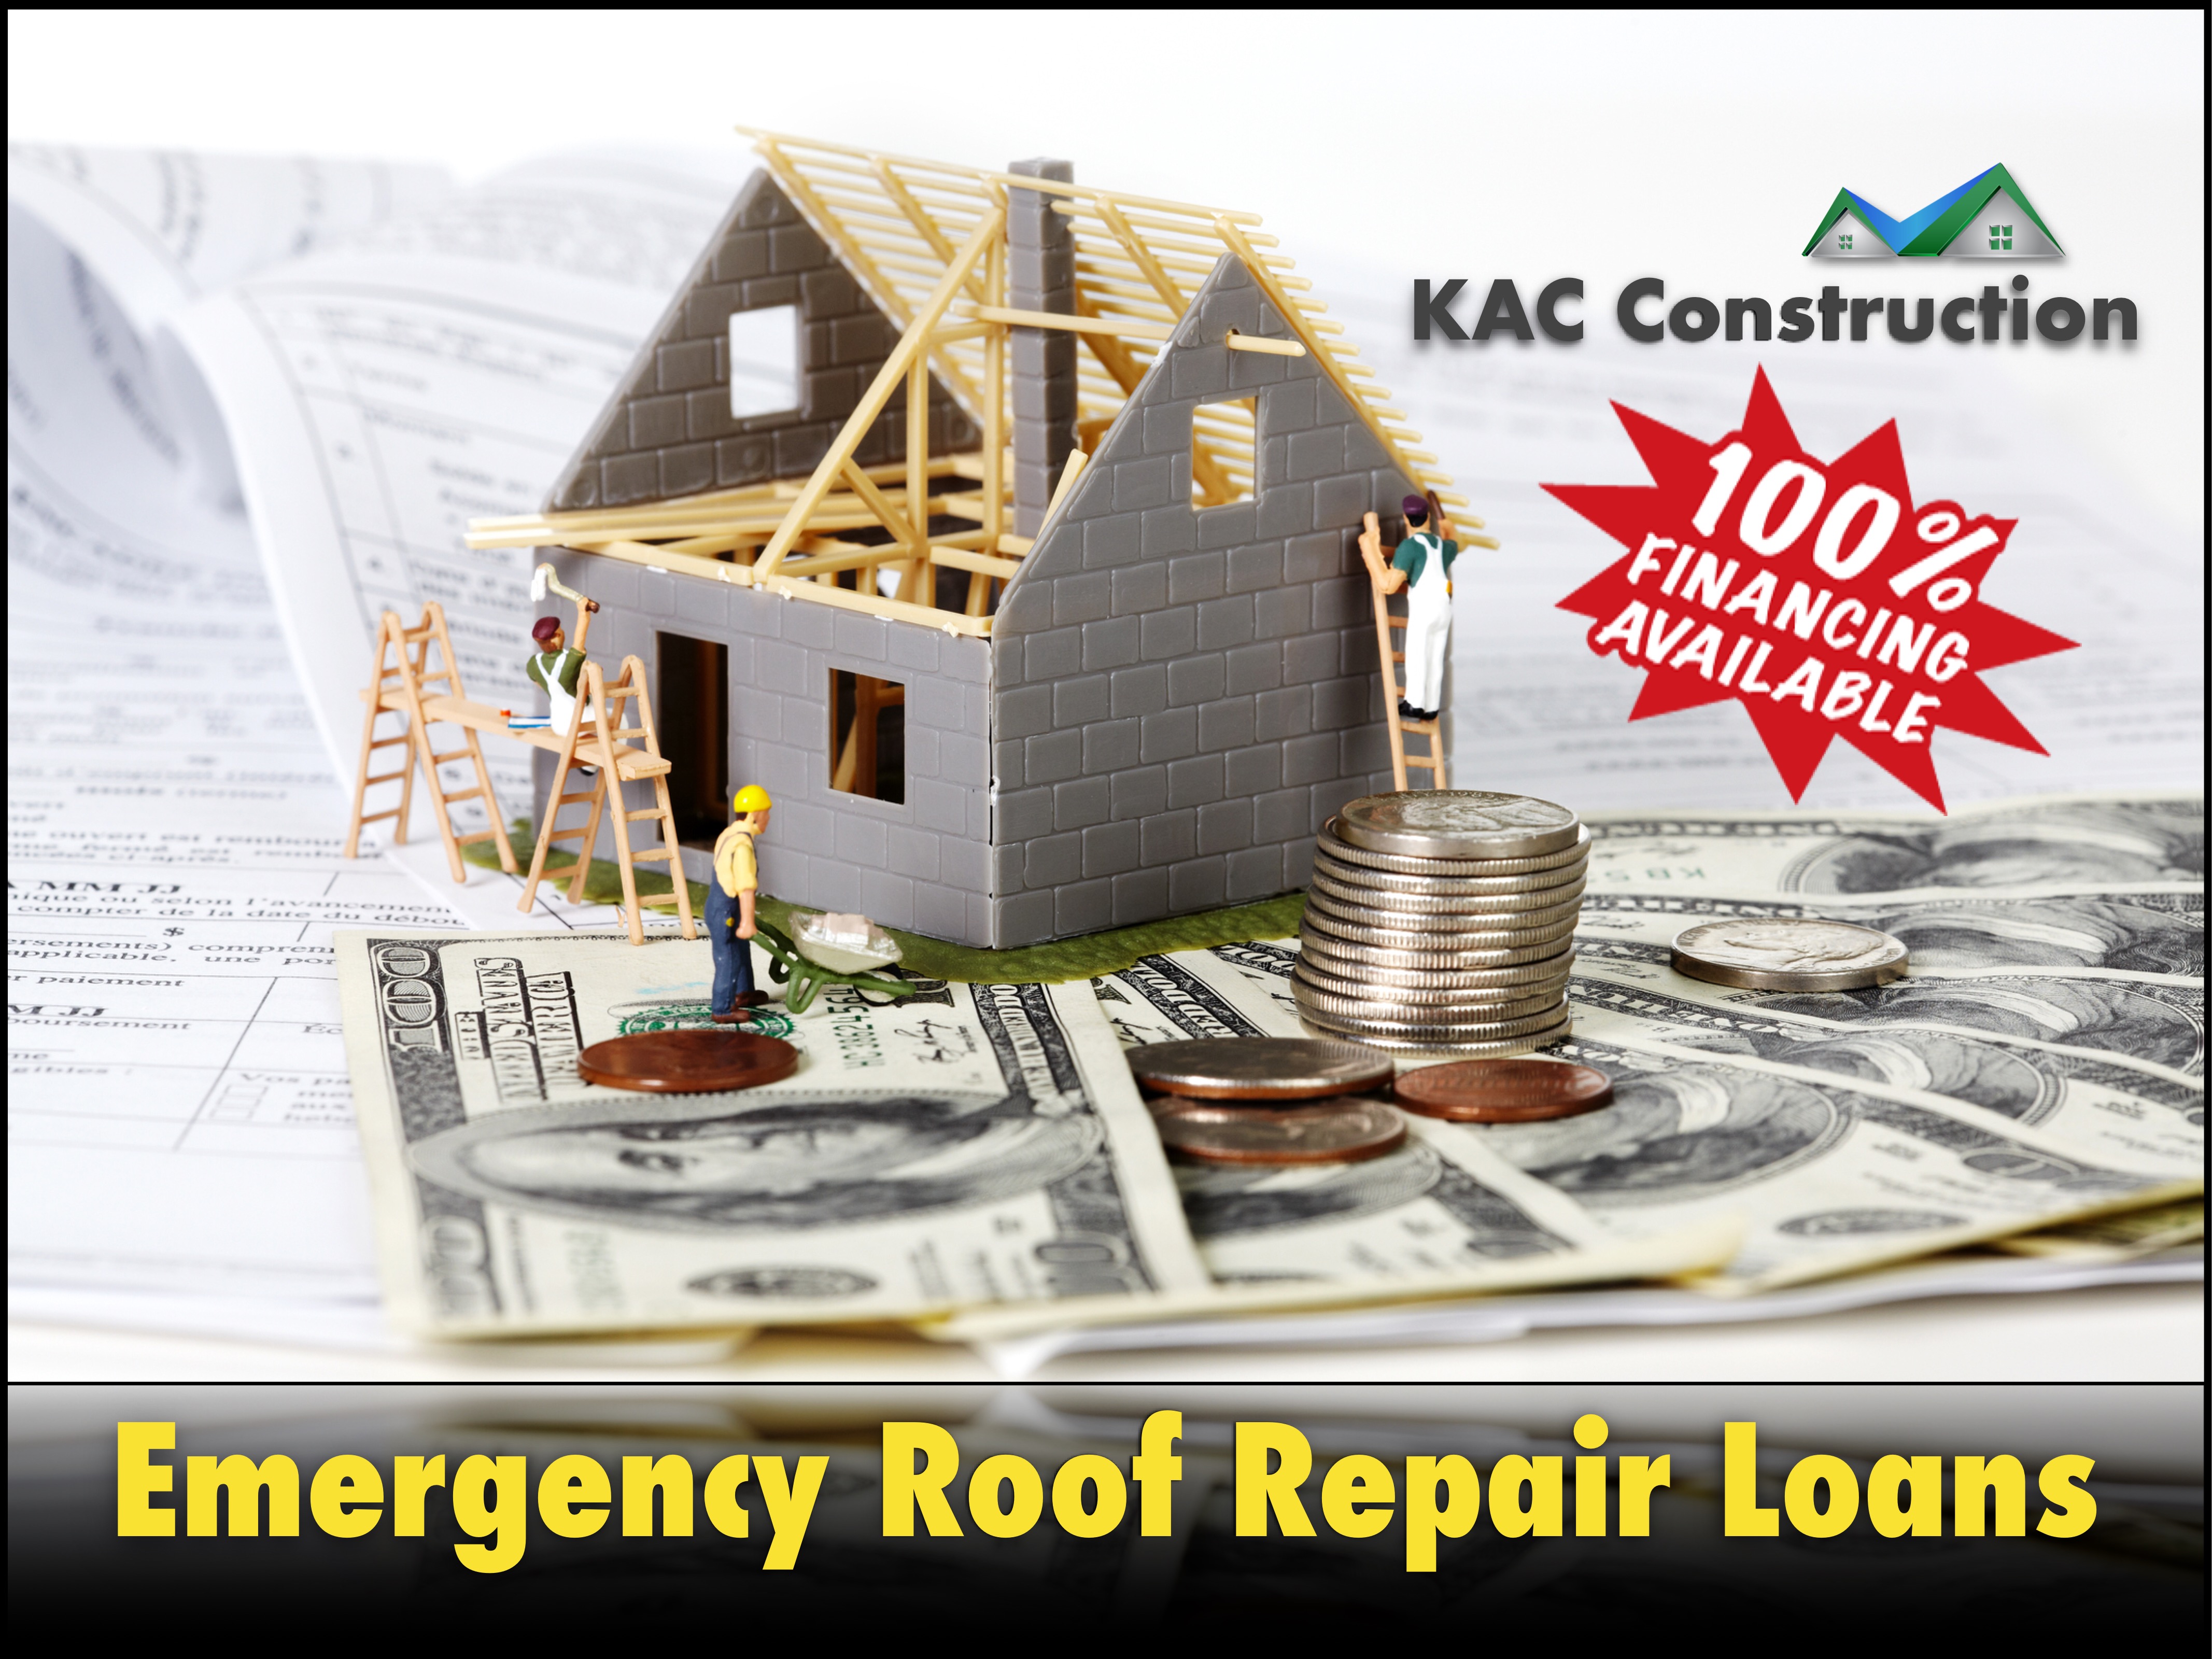 Emergency roof, emergency roof ri, emergency roof repair ri, emergency roof repair loan, emergency roof repair Loan ri, roof repair Loan ri, roof Loan ri.